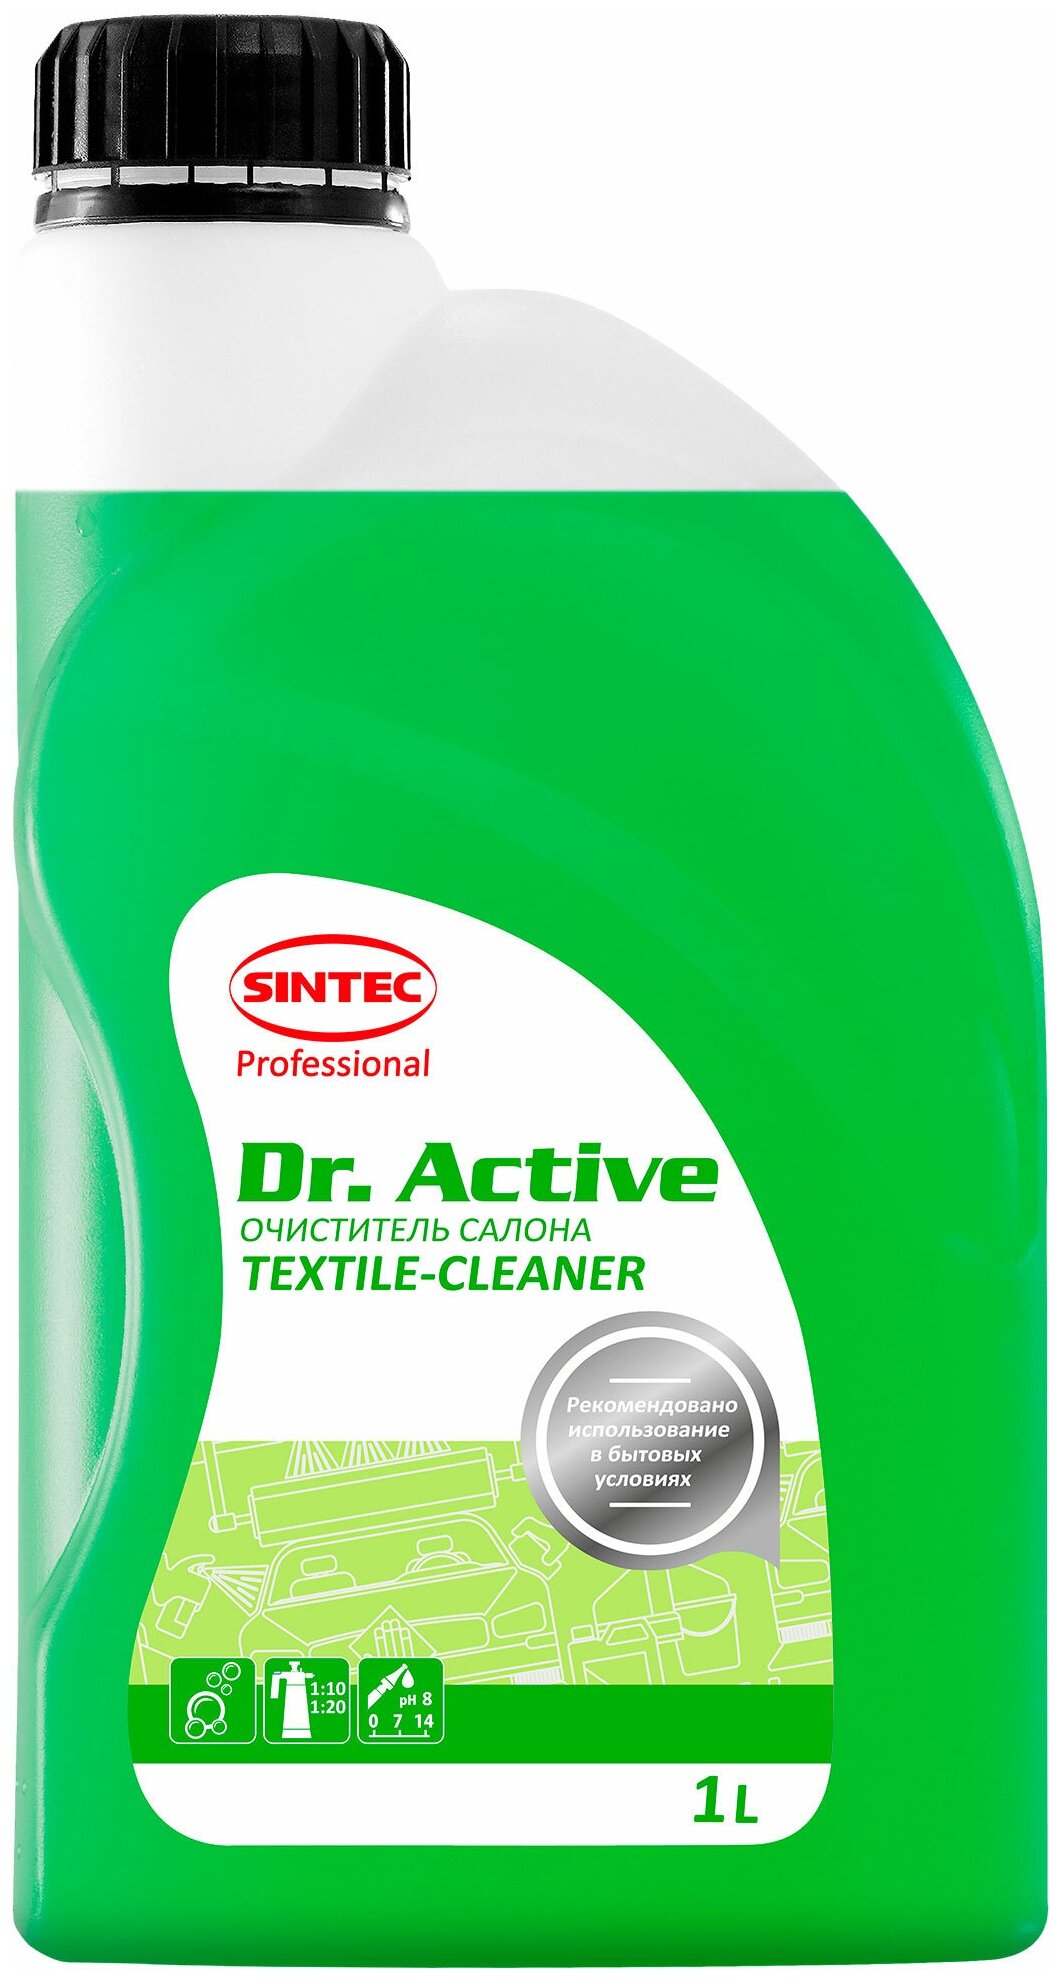 Очиститель салона Sintec Dr. Active текстиль